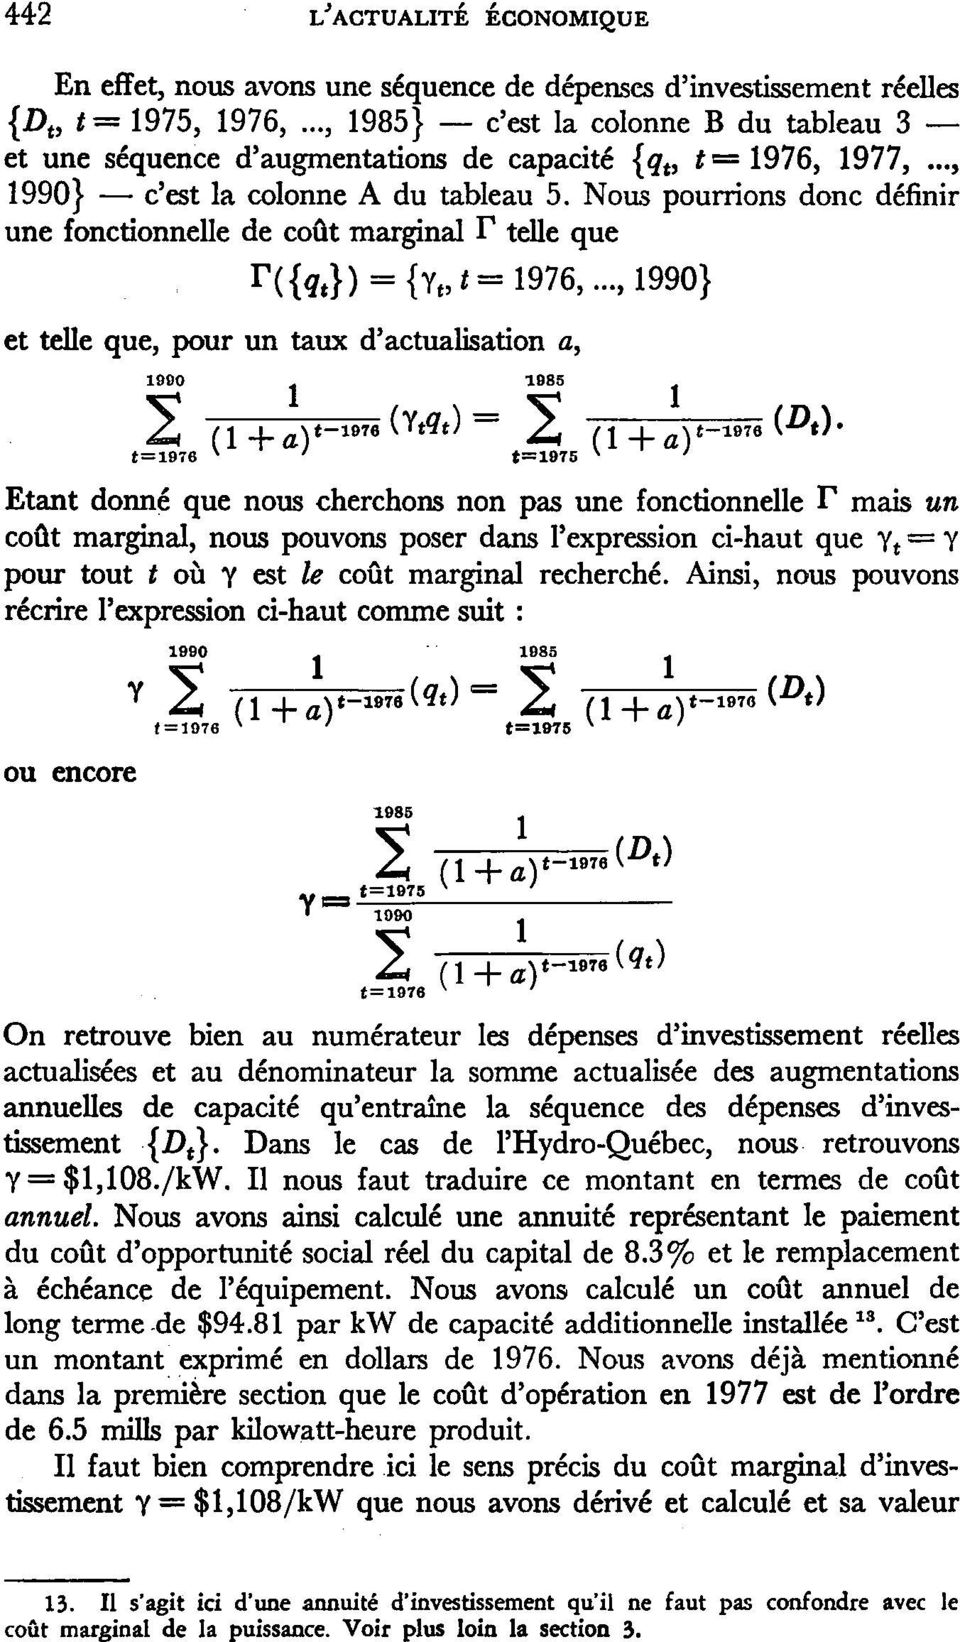 Nous pourrions donc définir une fonctionnelle de coût marginal T telle que ntit}) = {Vt,t= 1976,.